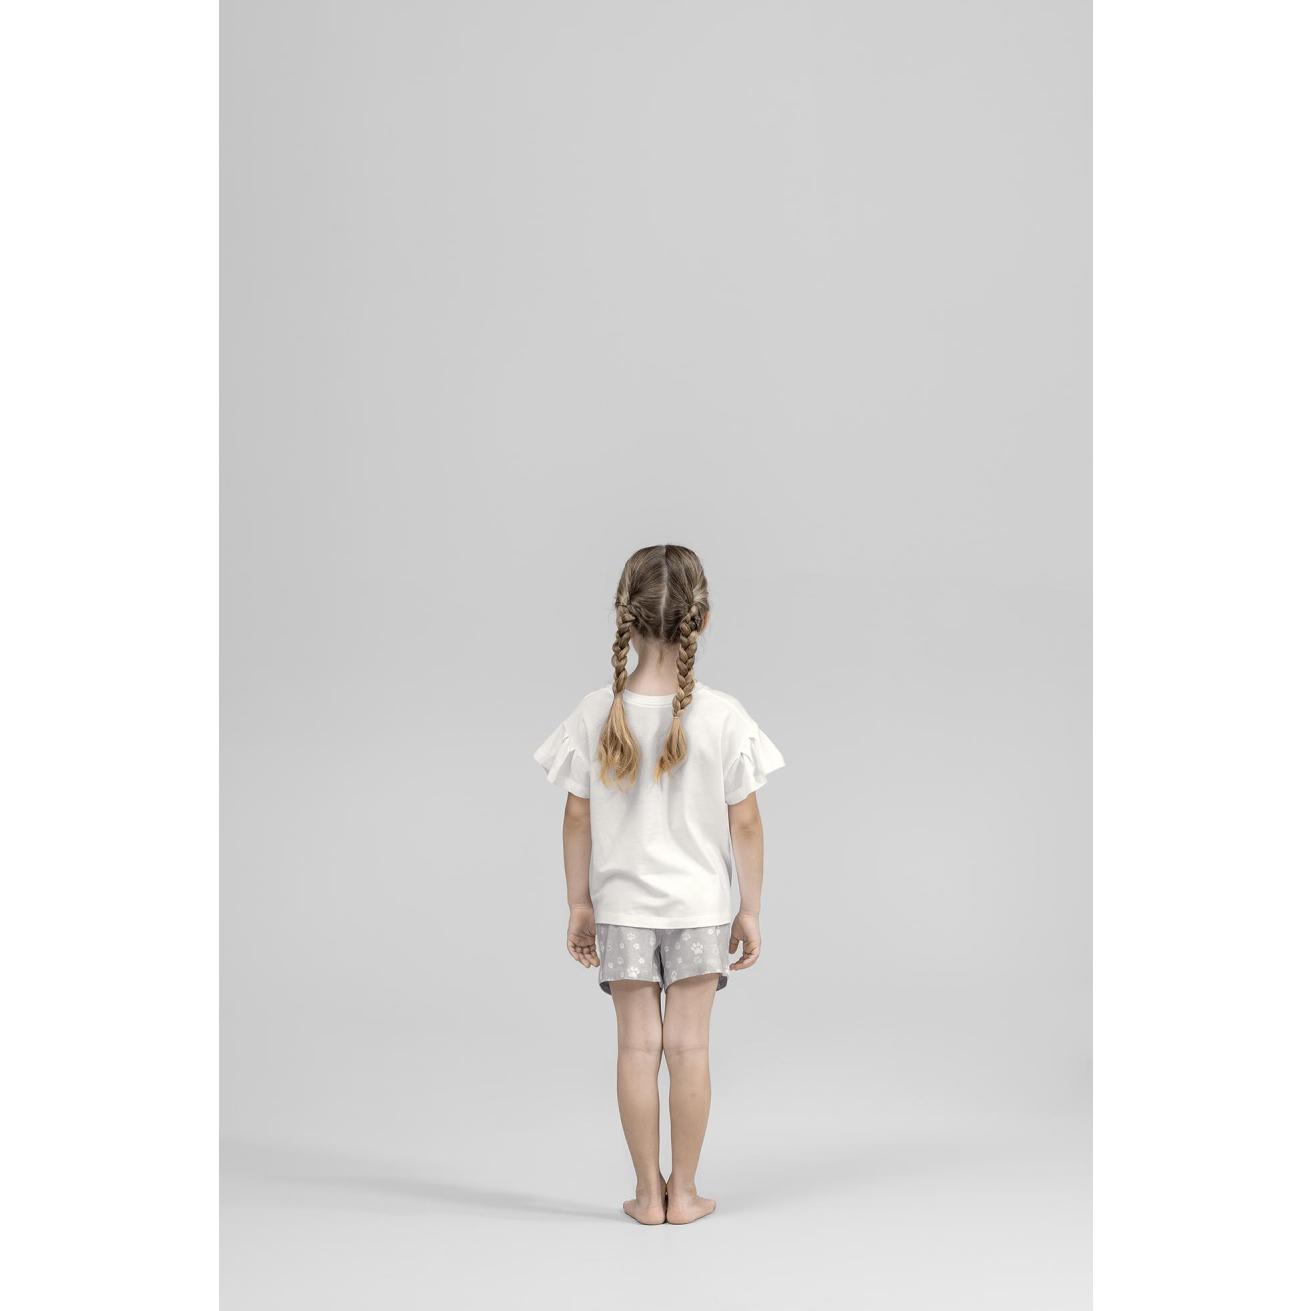 Пижама для девочек Kids by togas Китти бело-серая 128-134 см, цвет белый, размер 128-134 см - фото 5